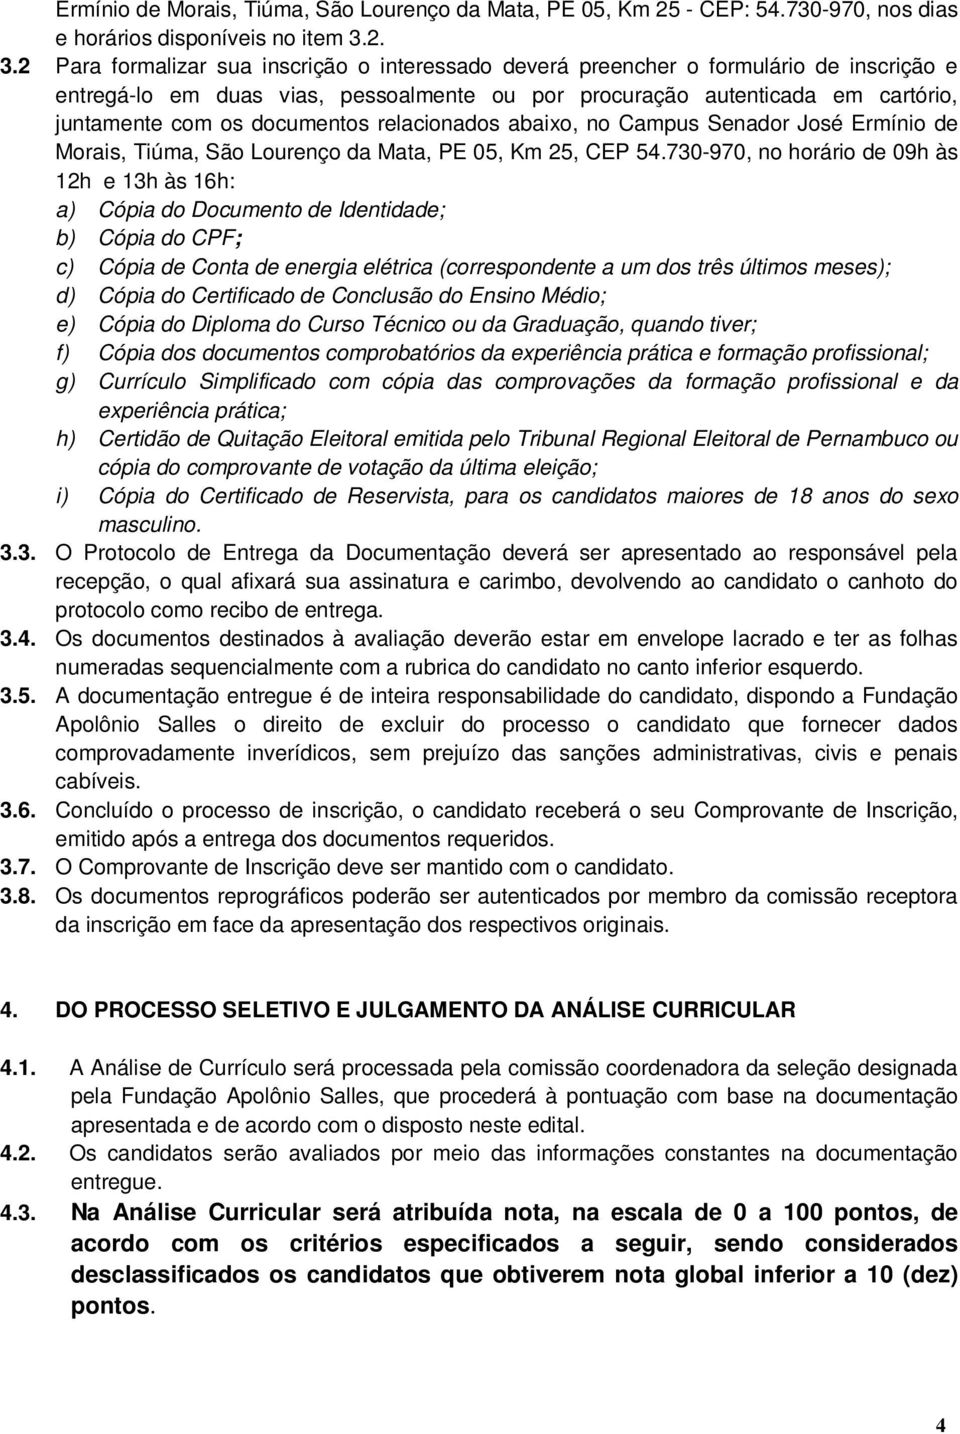 documentos relacionados abaixo, no Campus Senador José Ermínio de Morais, Tiúma, São Lourenço da Mata, PE 05, Km 25, CEP 54.